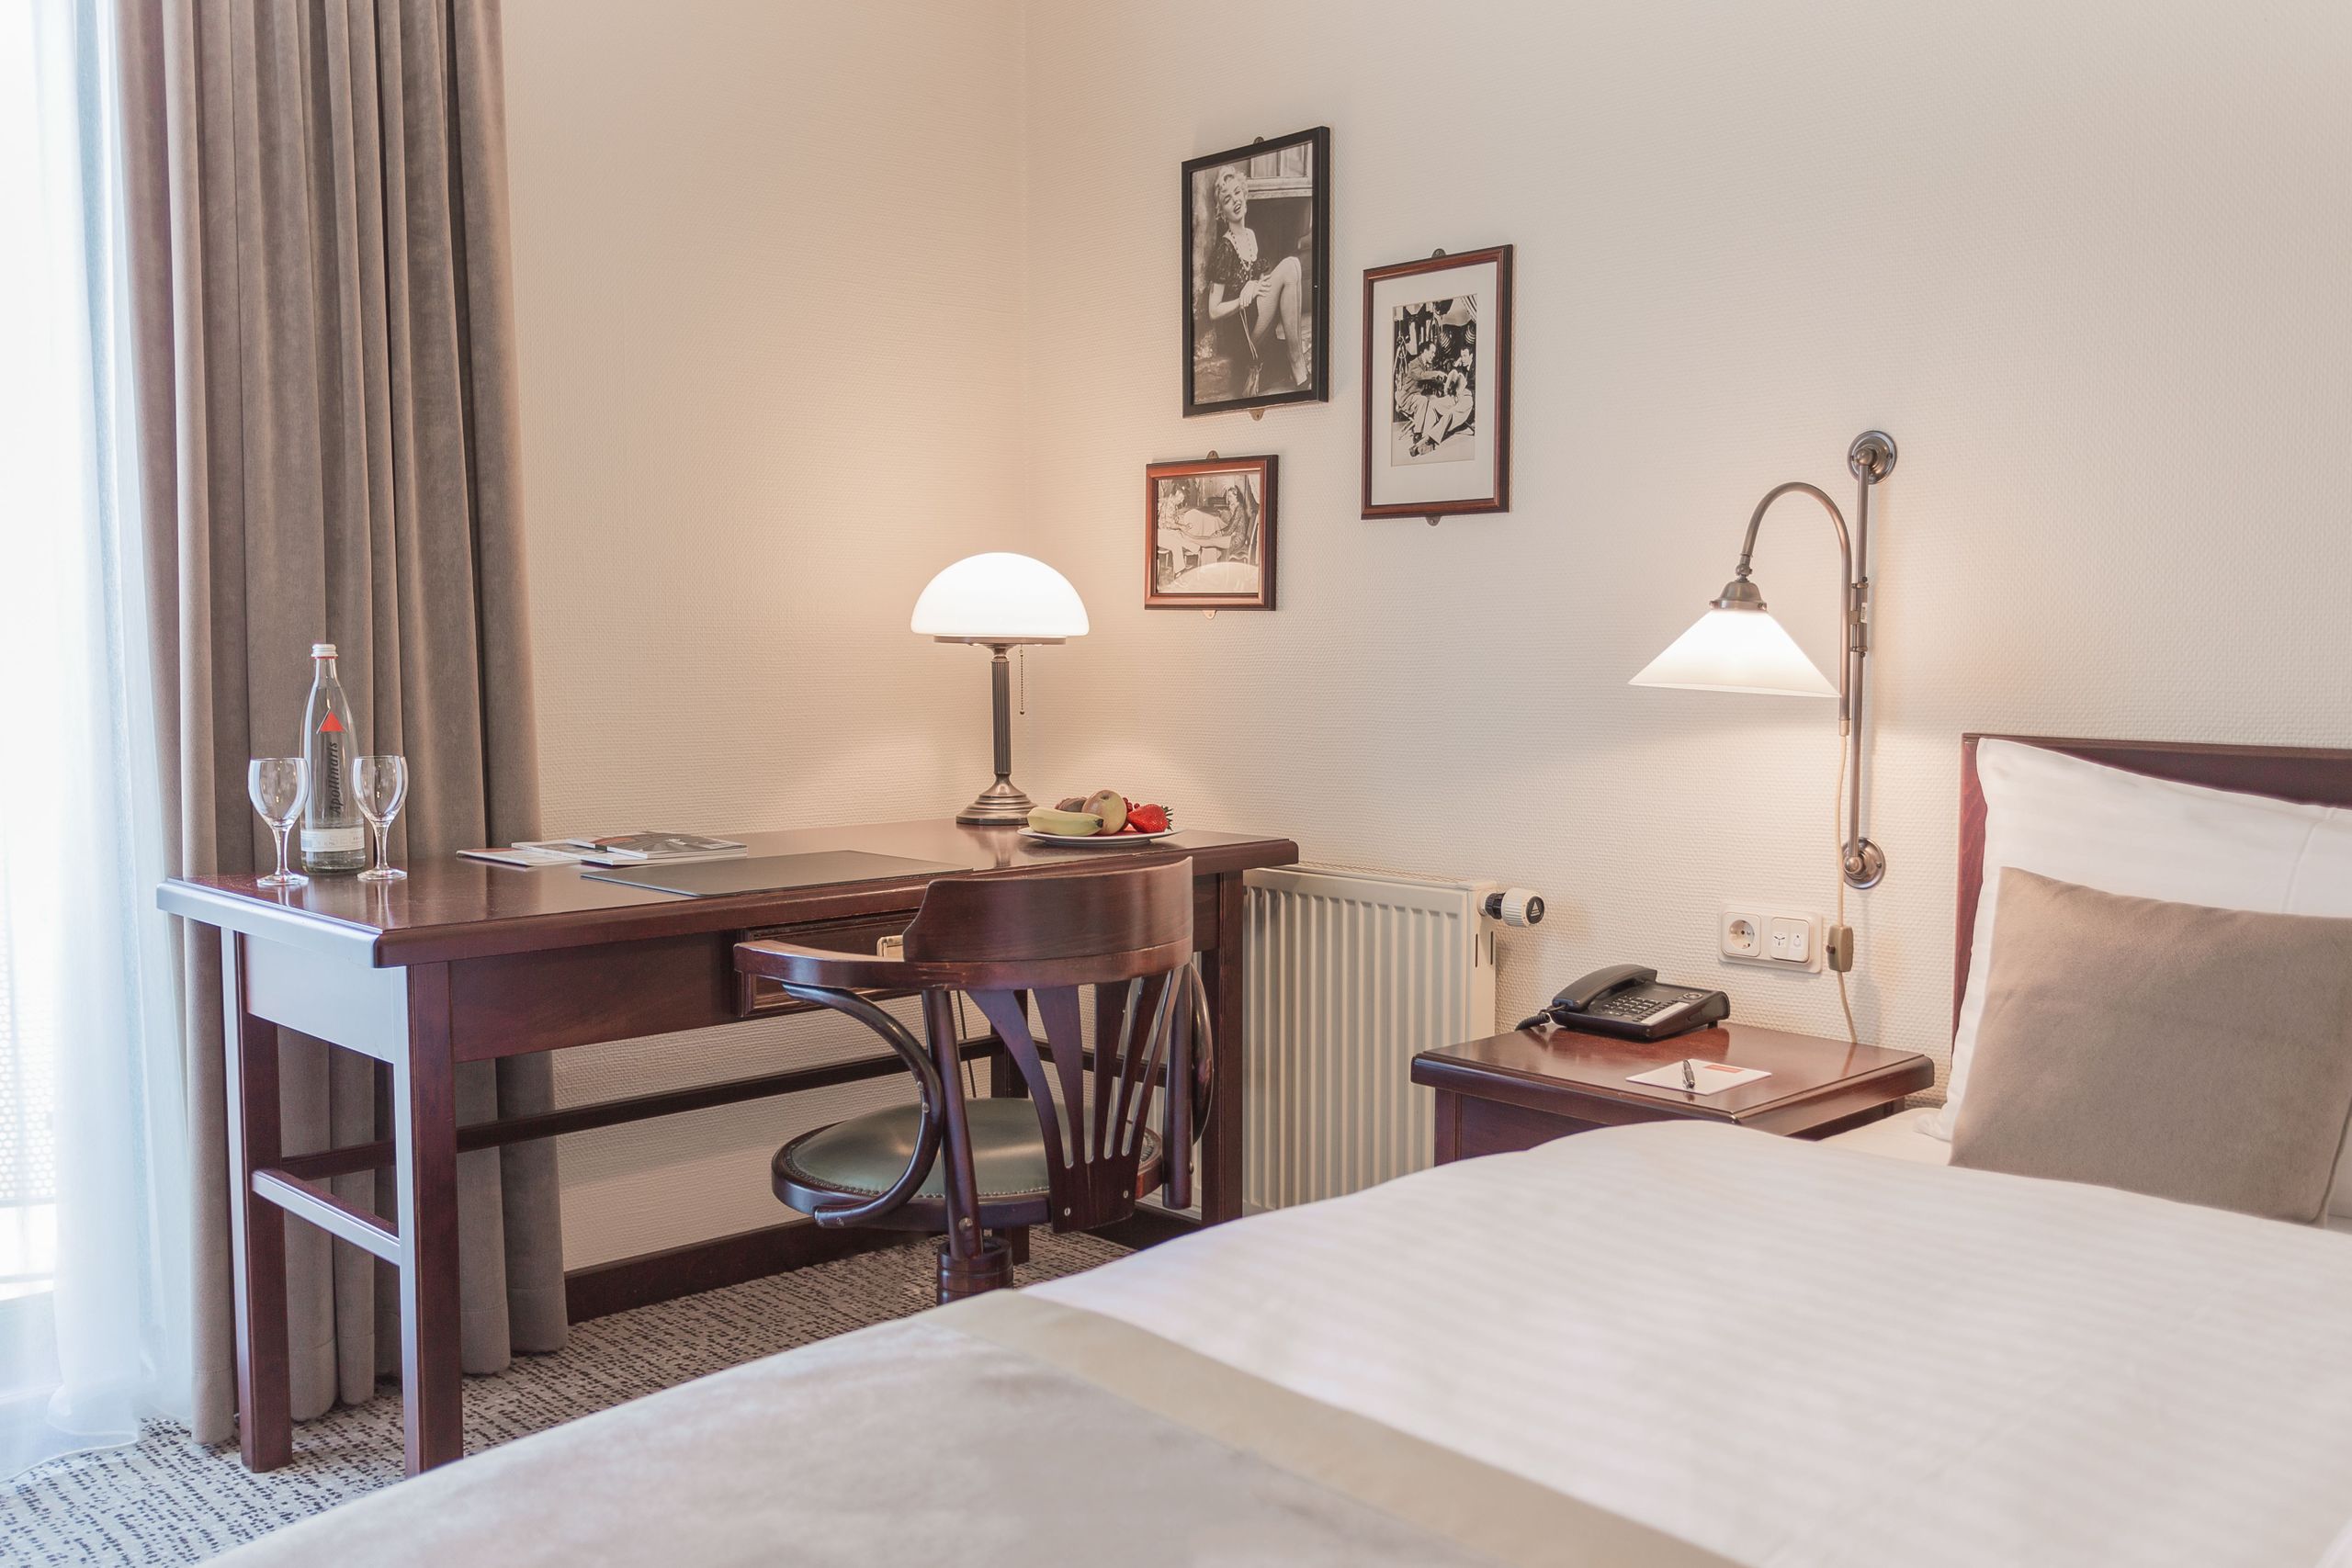 MAXX Hotel Jena – standard room